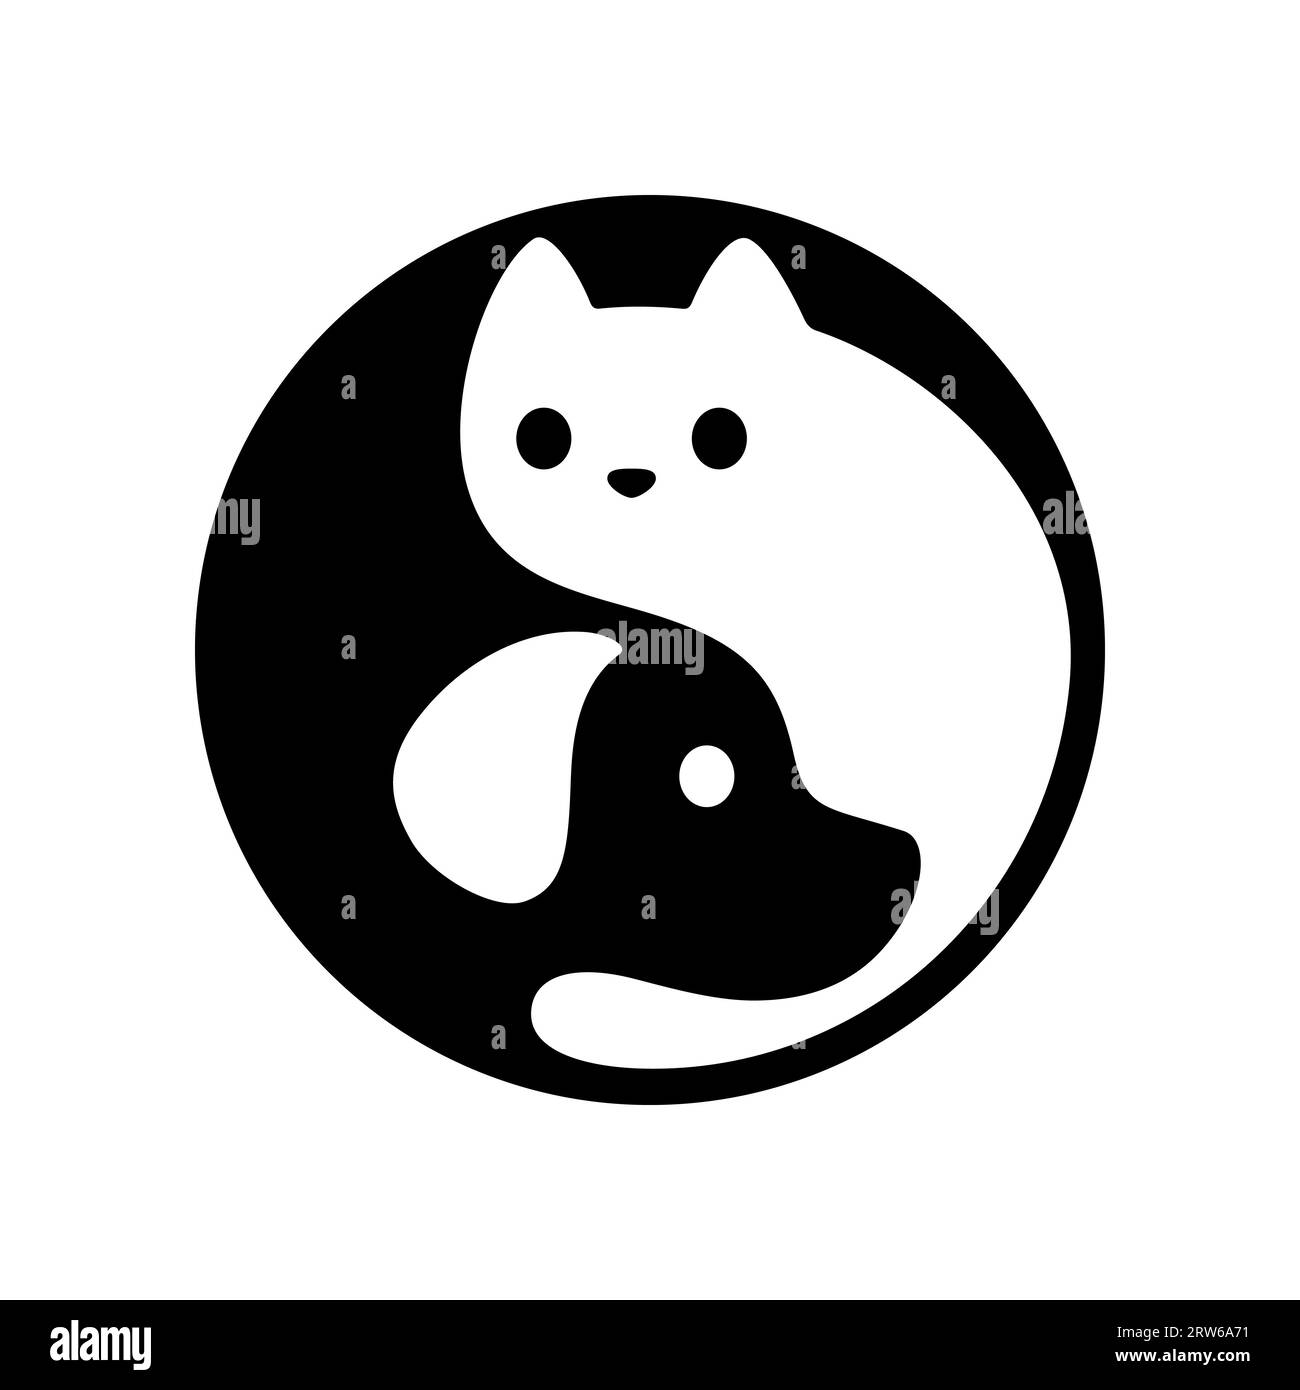 Logo yin yang gatto e cane. Simpatici e semplici animaletti in bianco e nero a forma di cerchio. Illustrazione vettoriale minima. Illustrazione Vettoriale